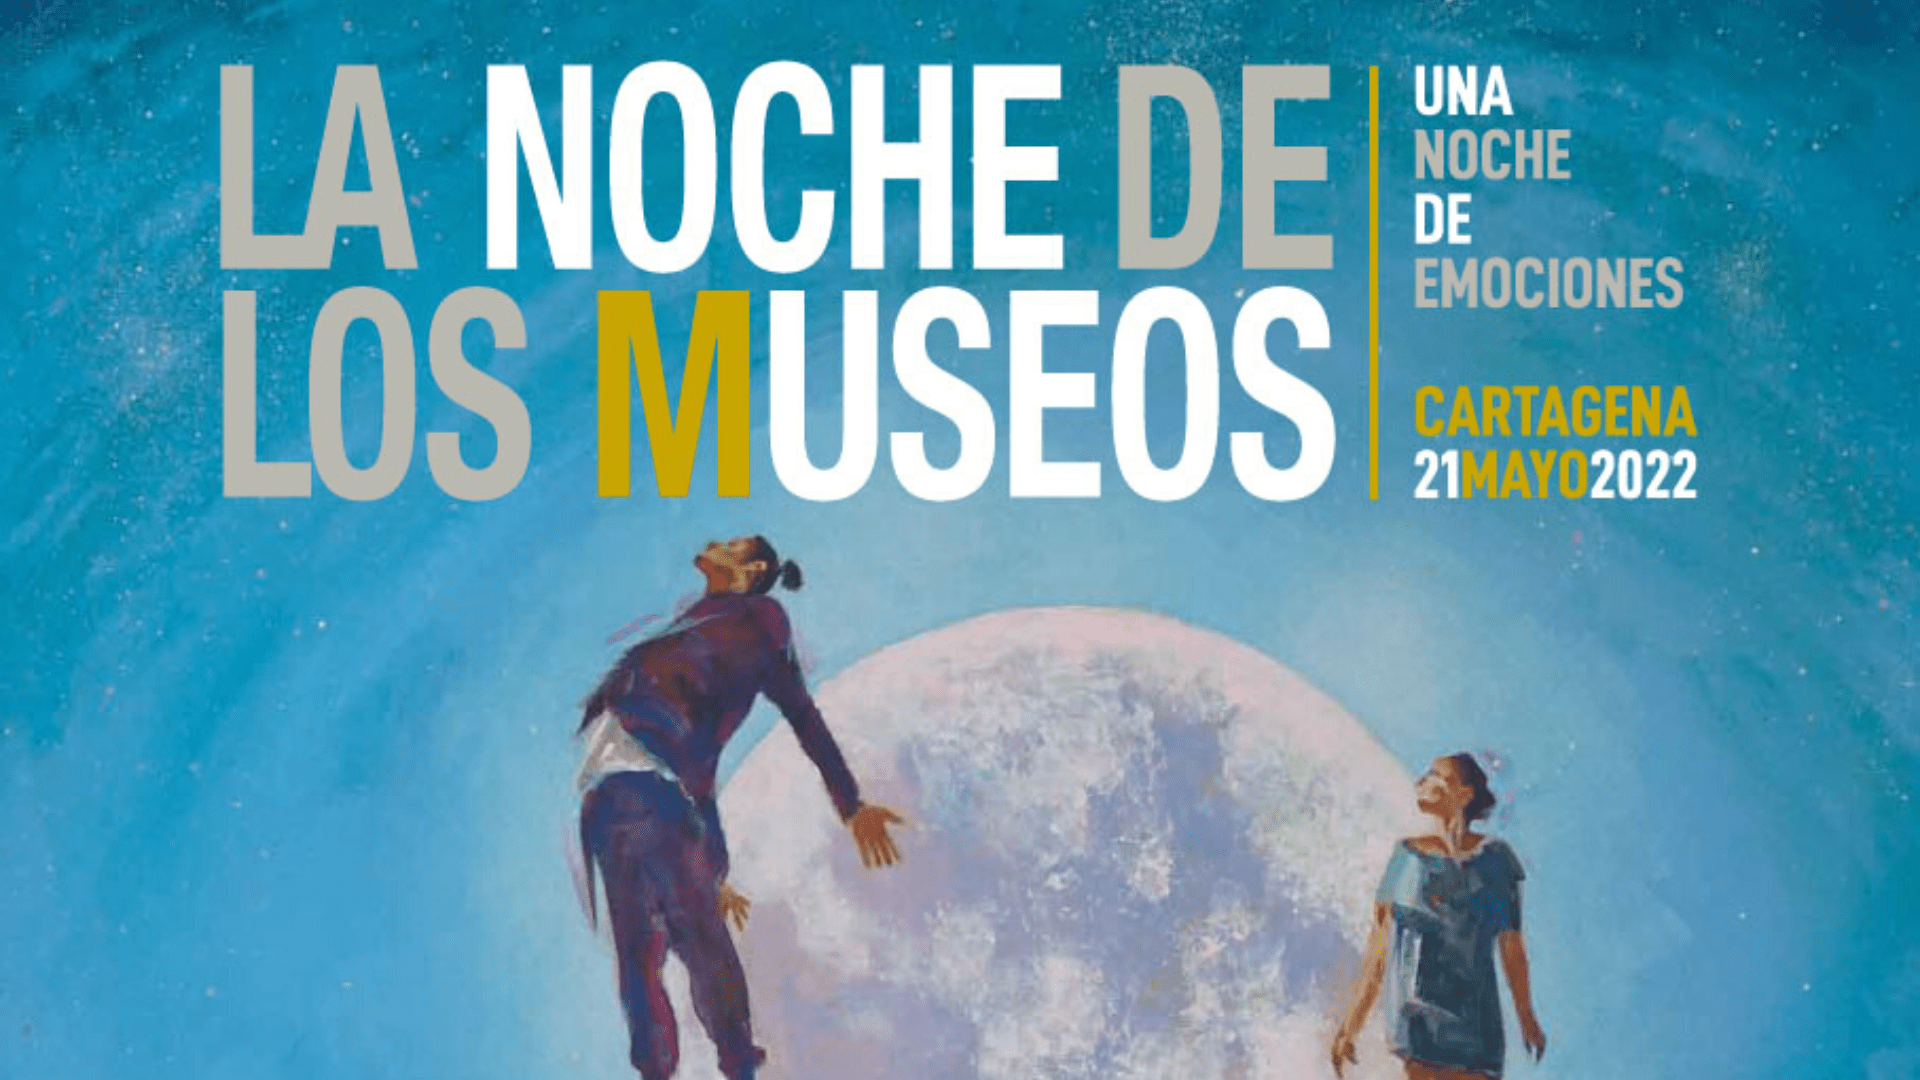 La Noche de Los Museos de Cartagena contará con 200 actividades gratuitas el próximo 21 de mayo